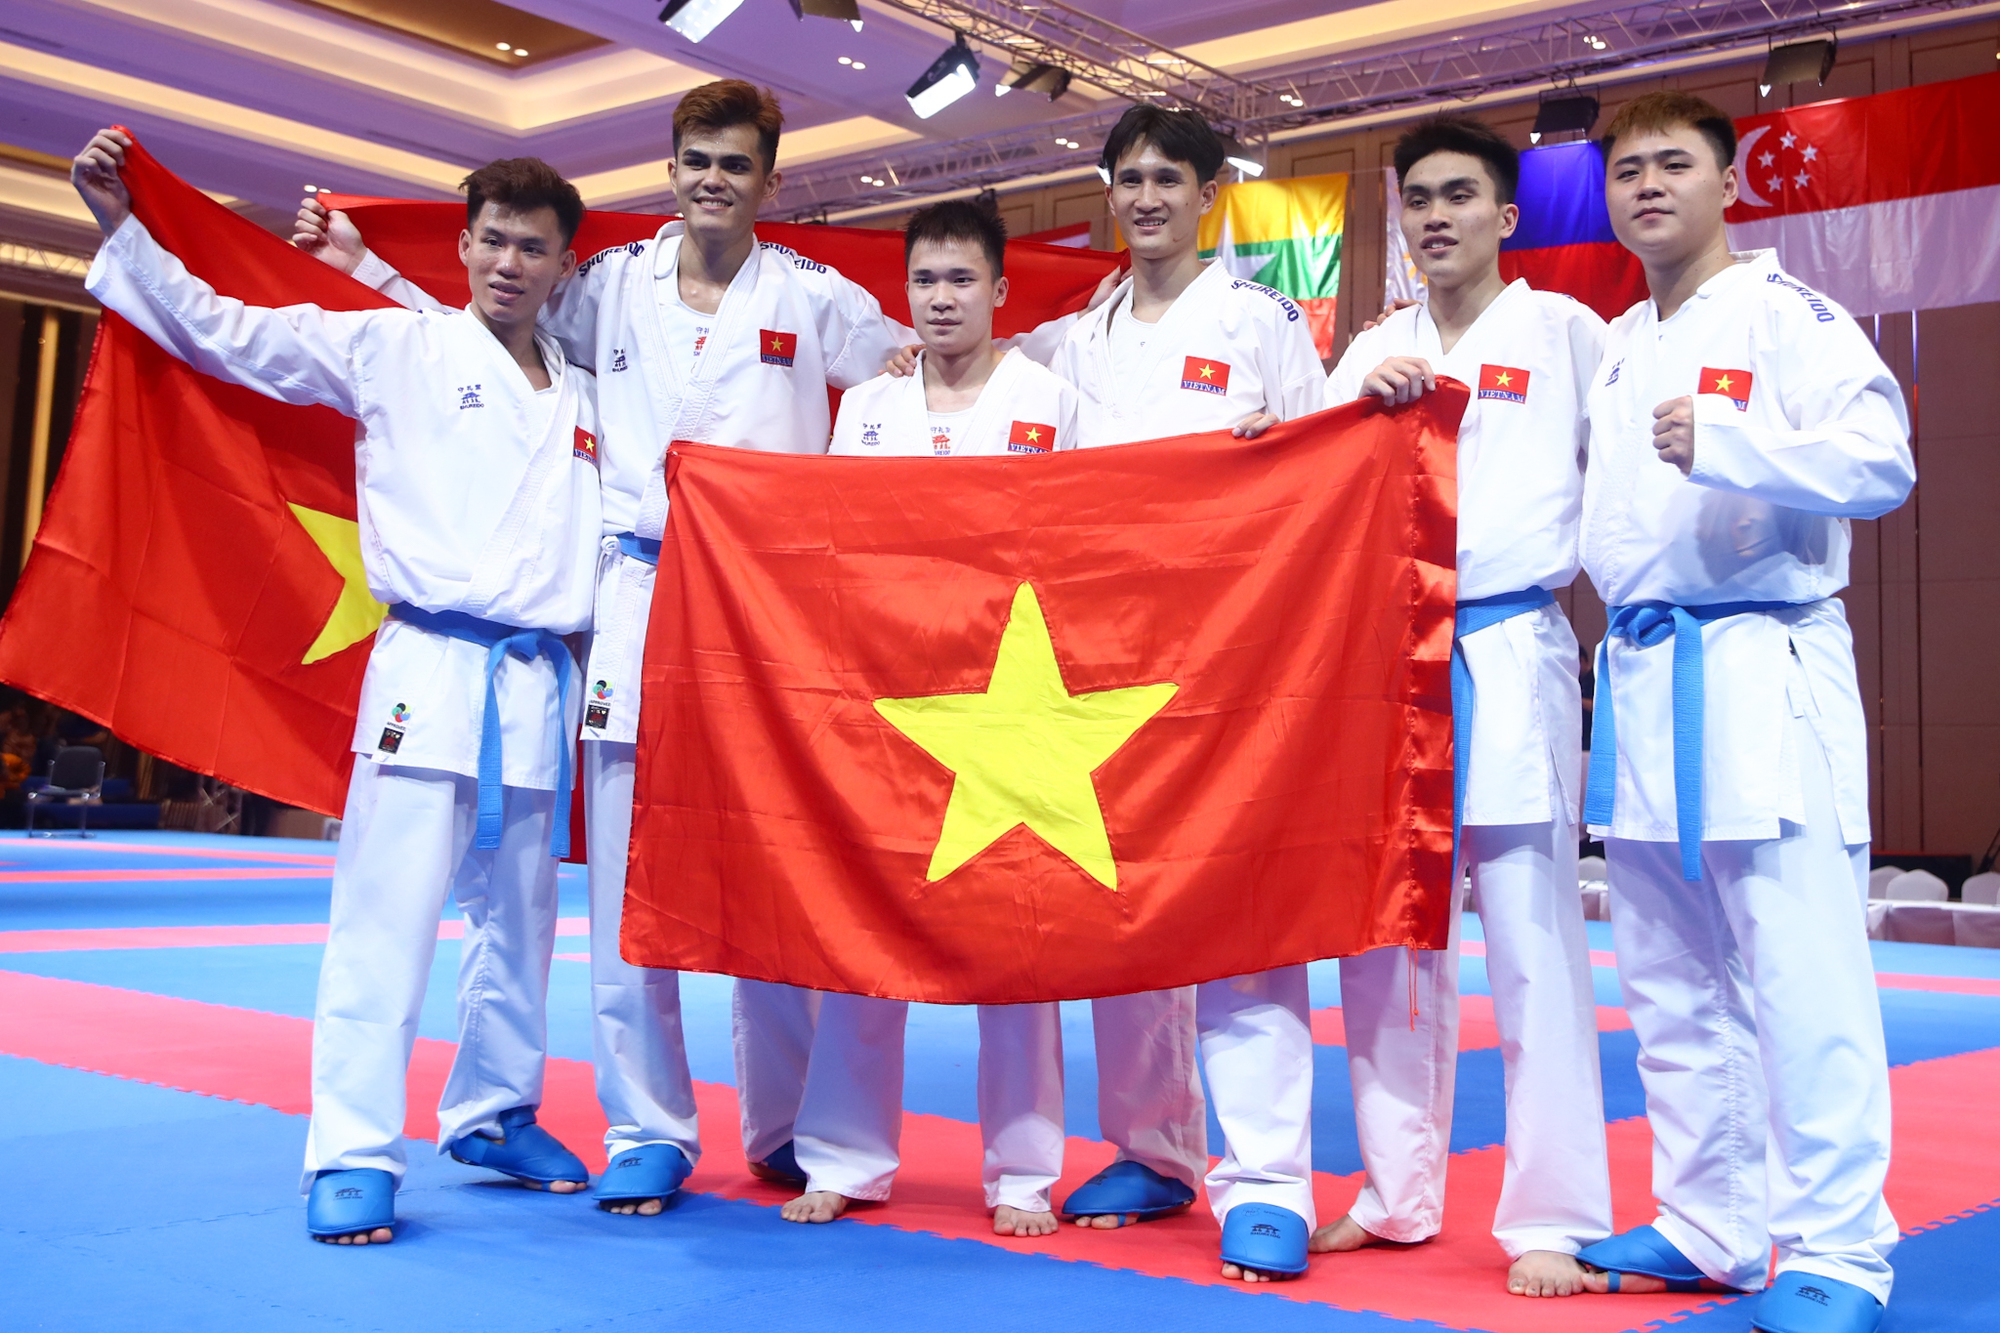 Giành vàng sau 6 năm chờ đợi, võ sĩ Việt được đồng đội dìu lên bục nhận huy chương - Ảnh 5.